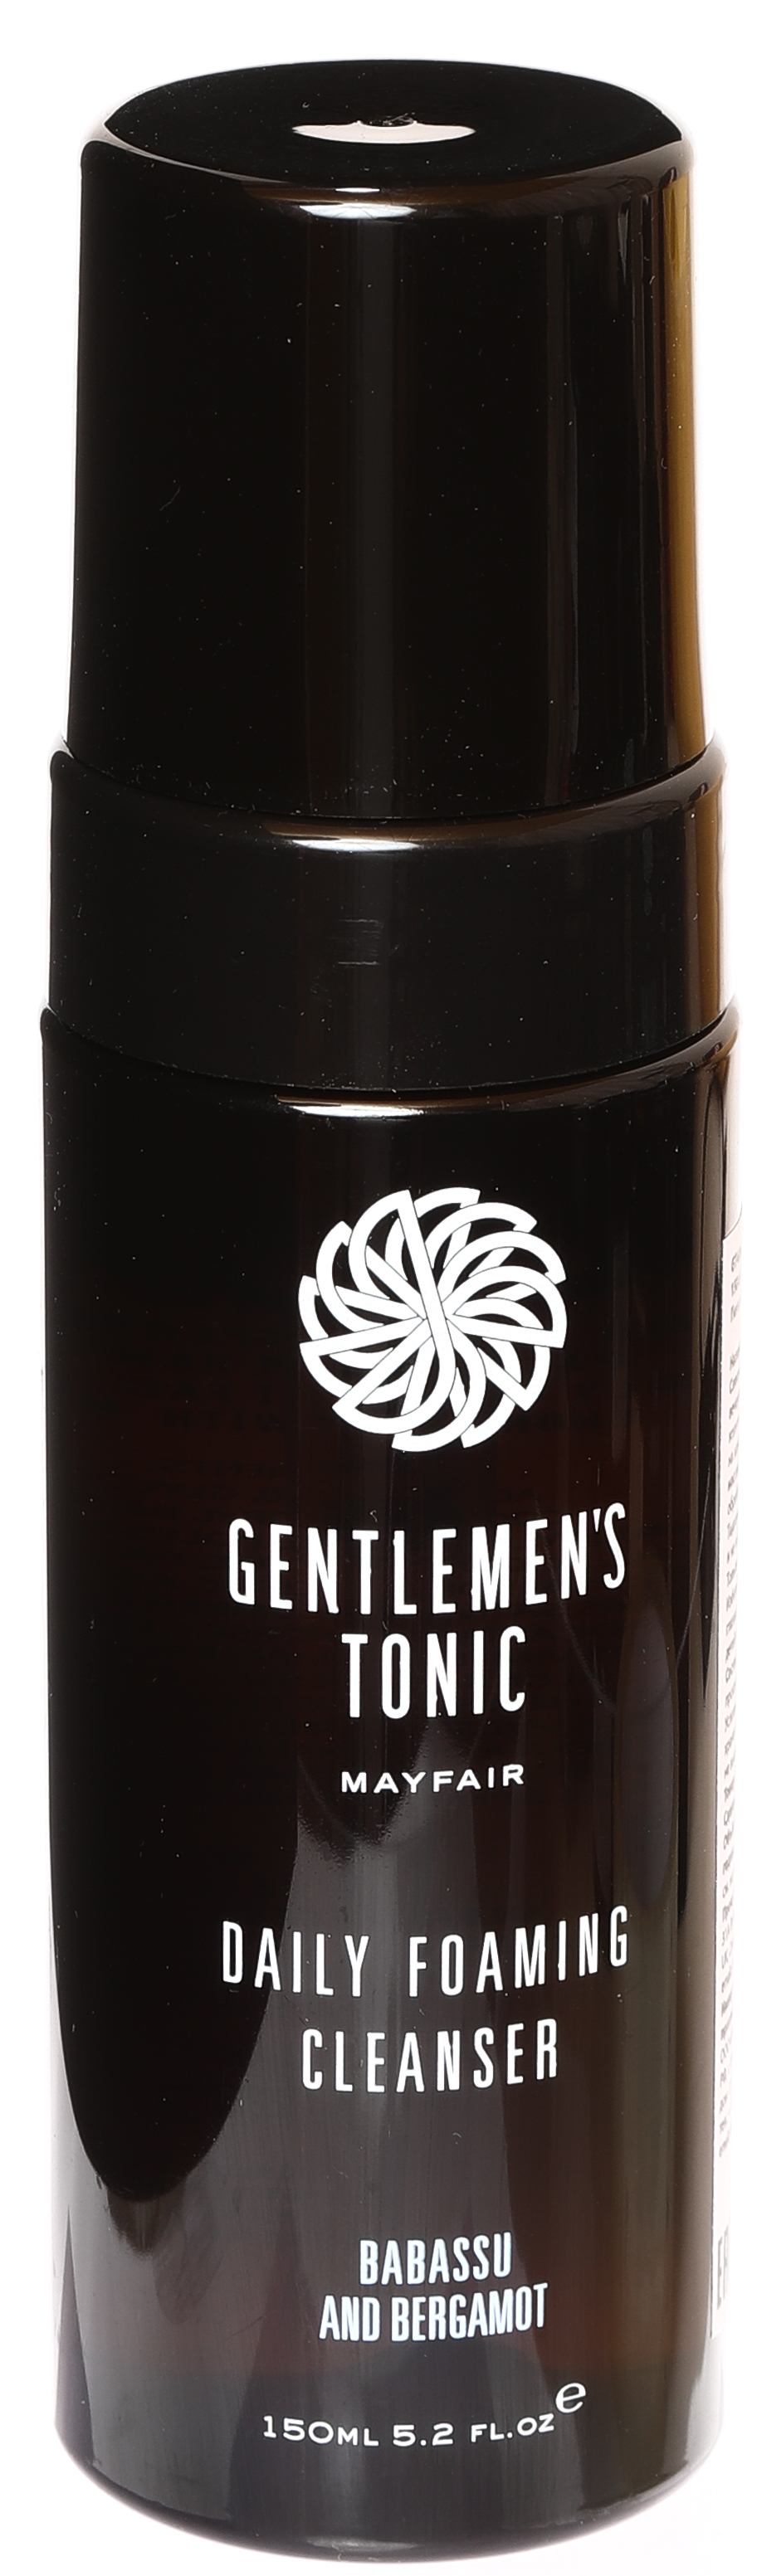 Пенка для умывания очищающая для мужчин Gentlemen's Tonic 150 мл